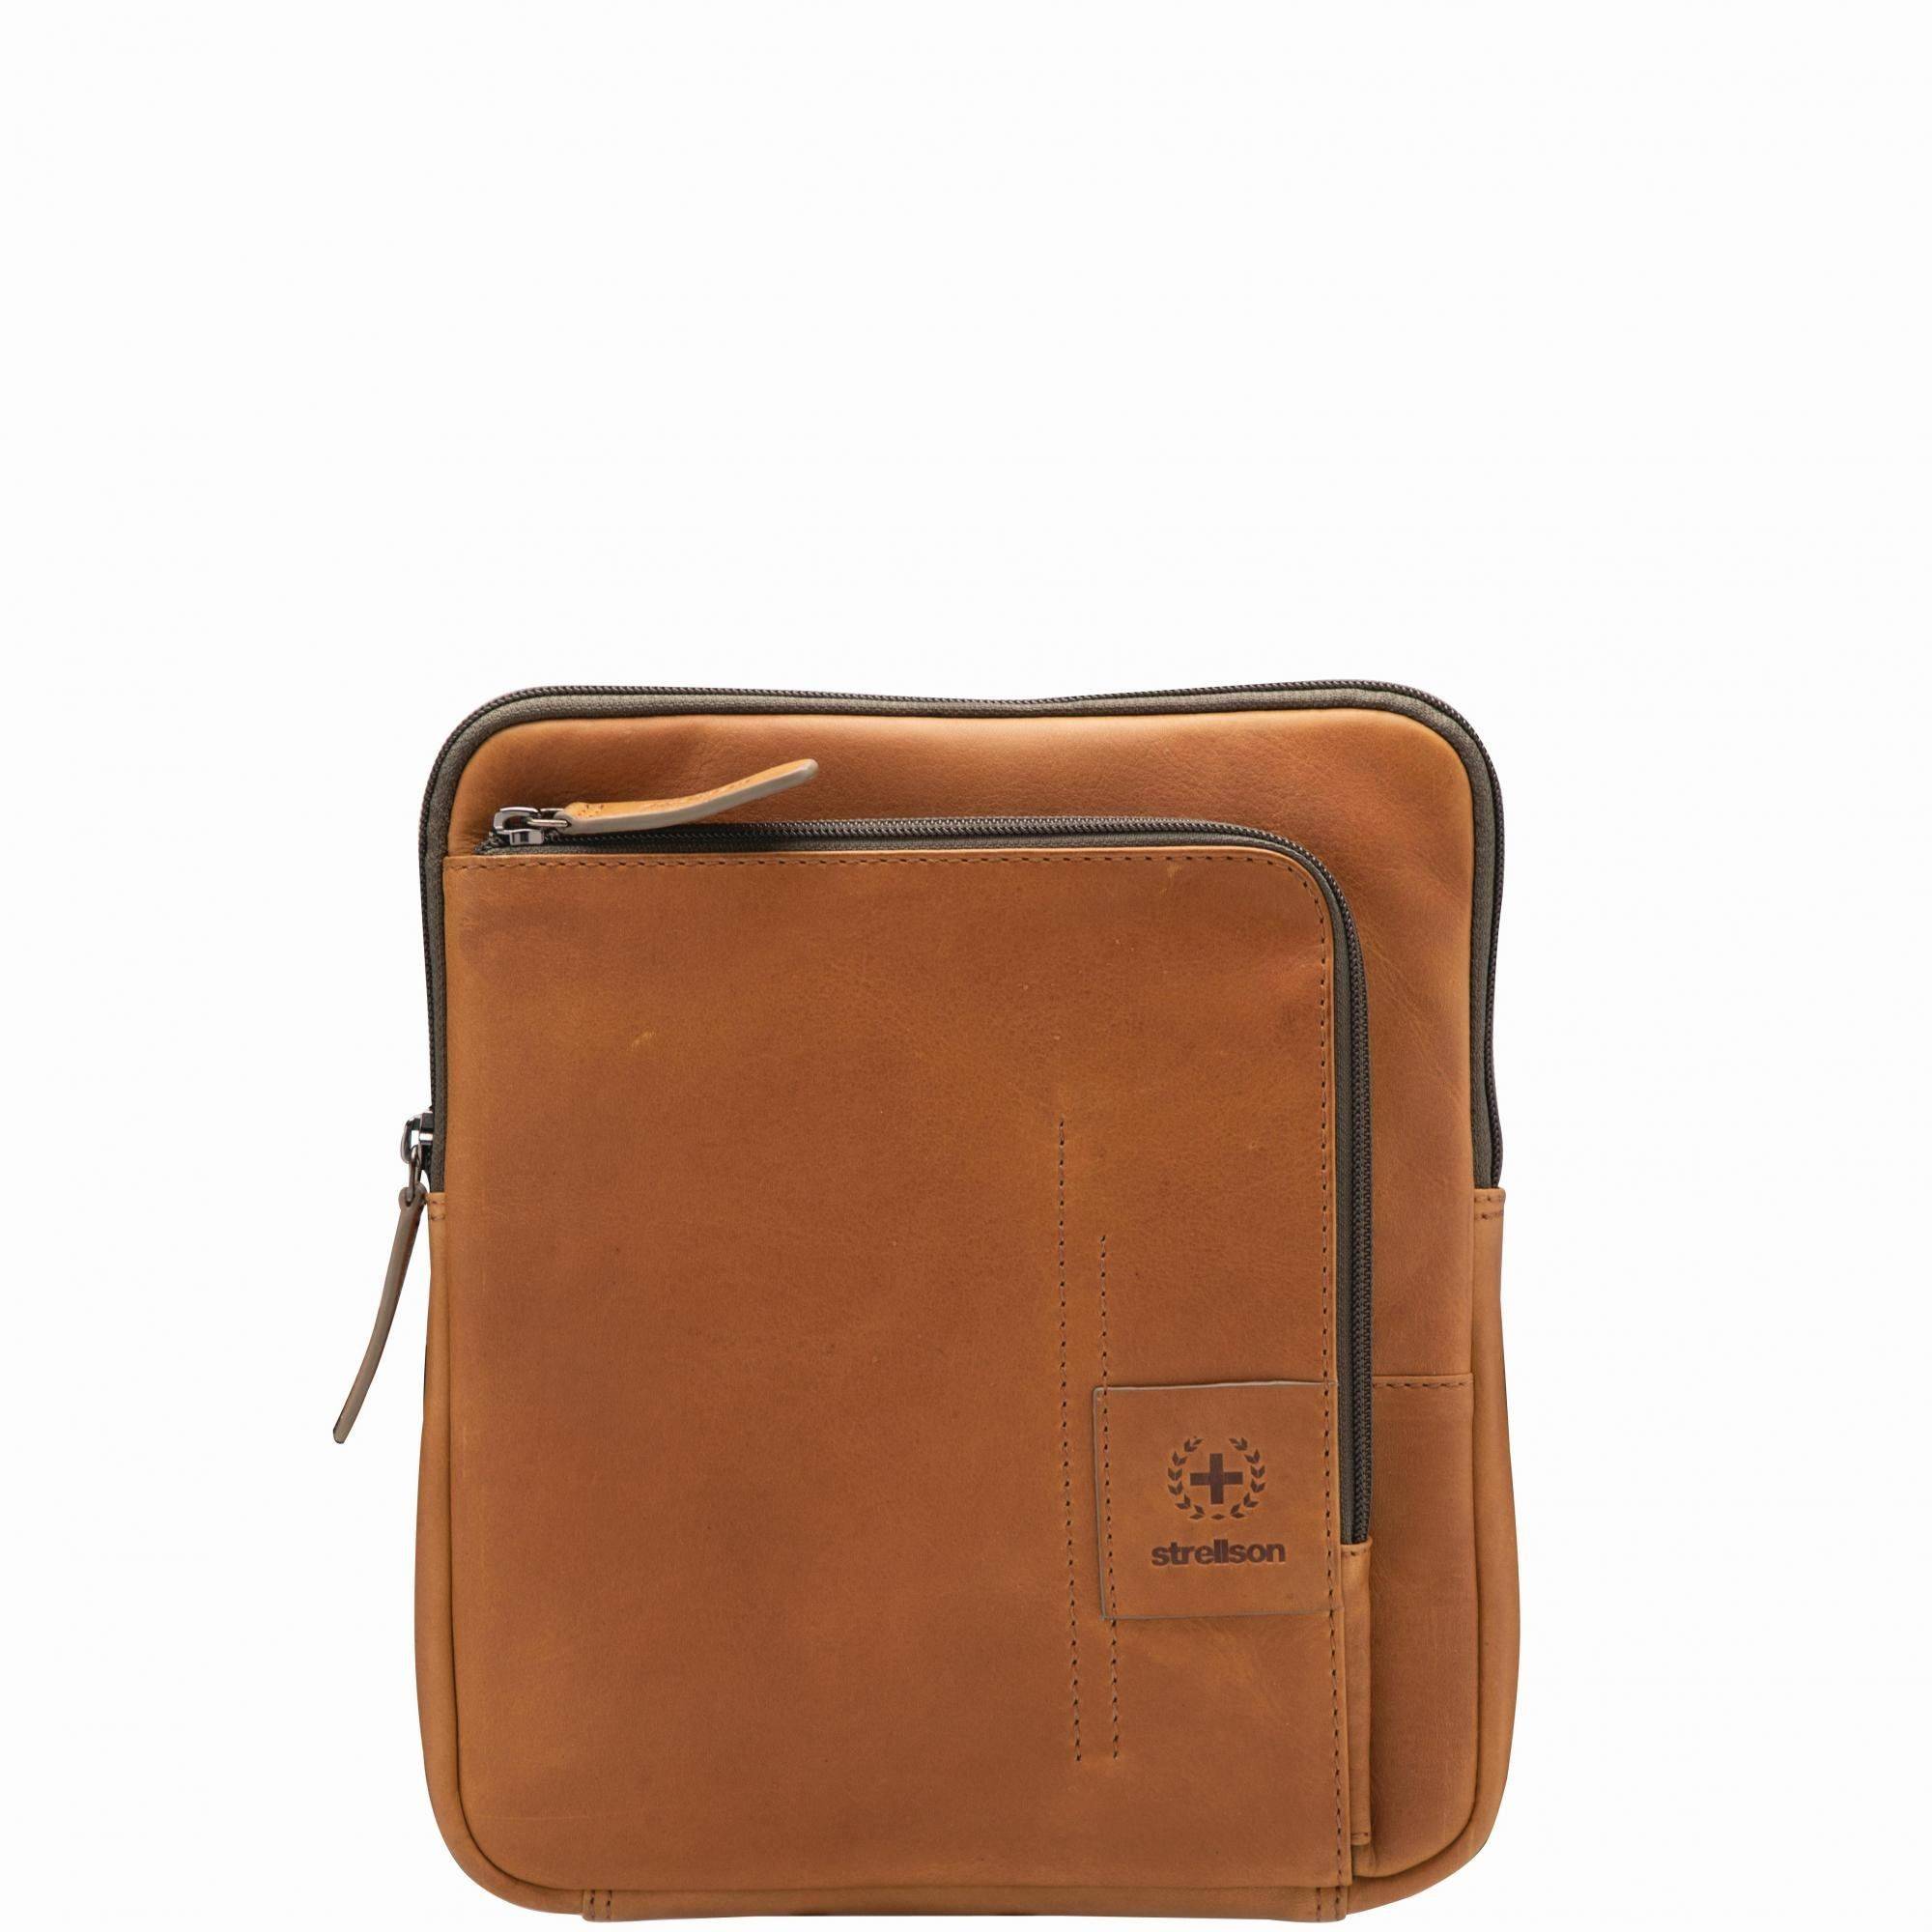 Городская сумка Strellson Bags Hyde park shoulderbag xsvz 4010002770, цвет коньячный, размер ONE SIZE - фото 1